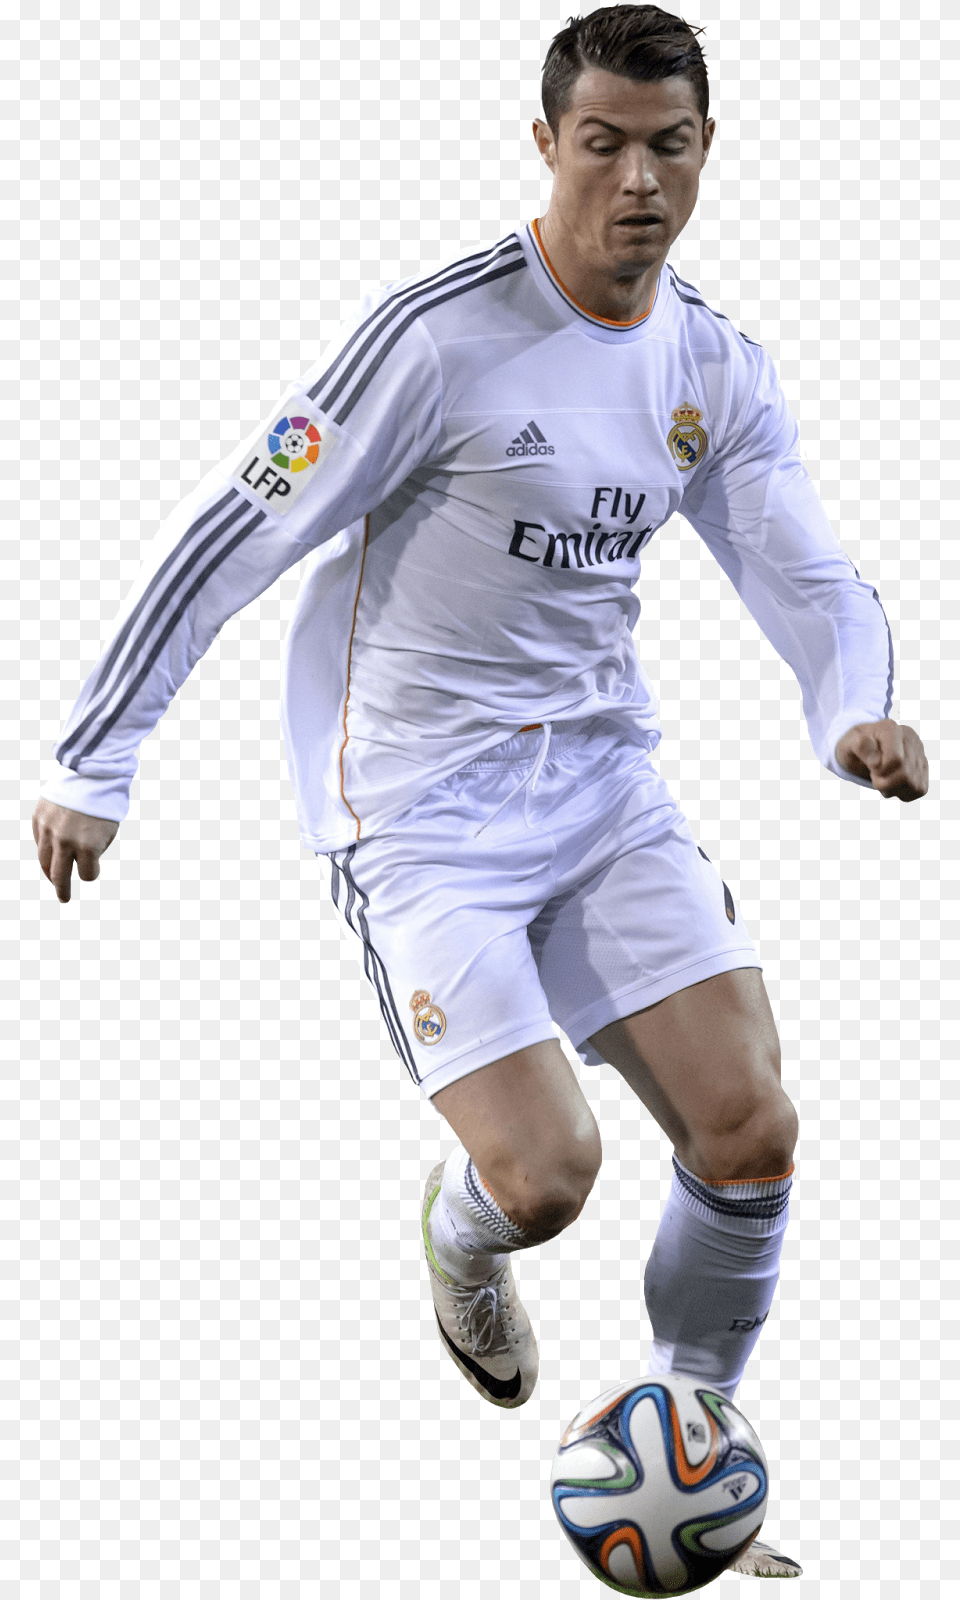 Real Cristiano Madrid Ronaldo Football Player C Jugadores De Futbol Ronaldo, Sport, Ball, Sphere, Soccer Ball Free Transparent Png